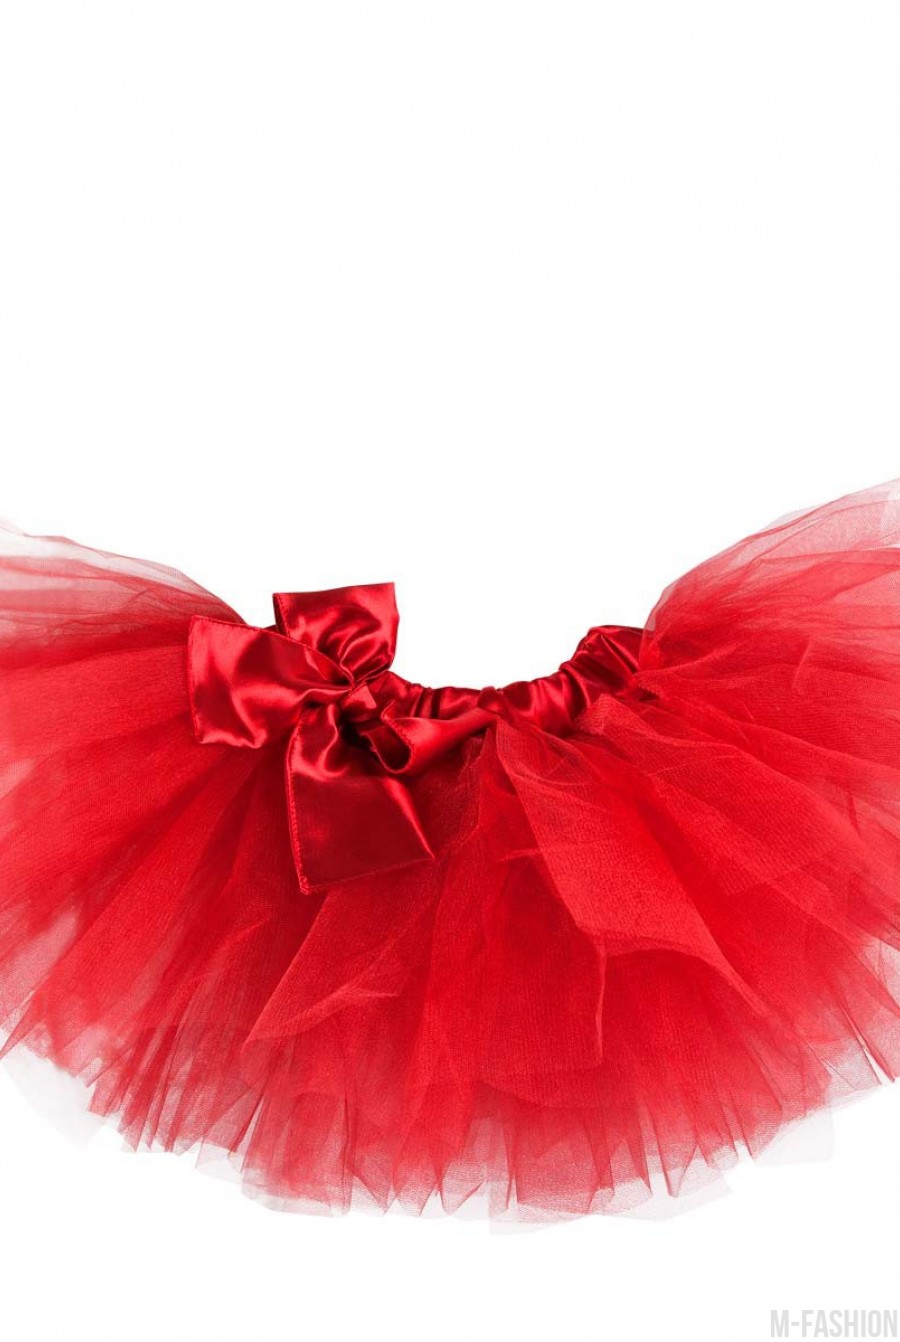 Красная пышная многослойная юбка-пачка из фатина с атласной лентой - Фото 1